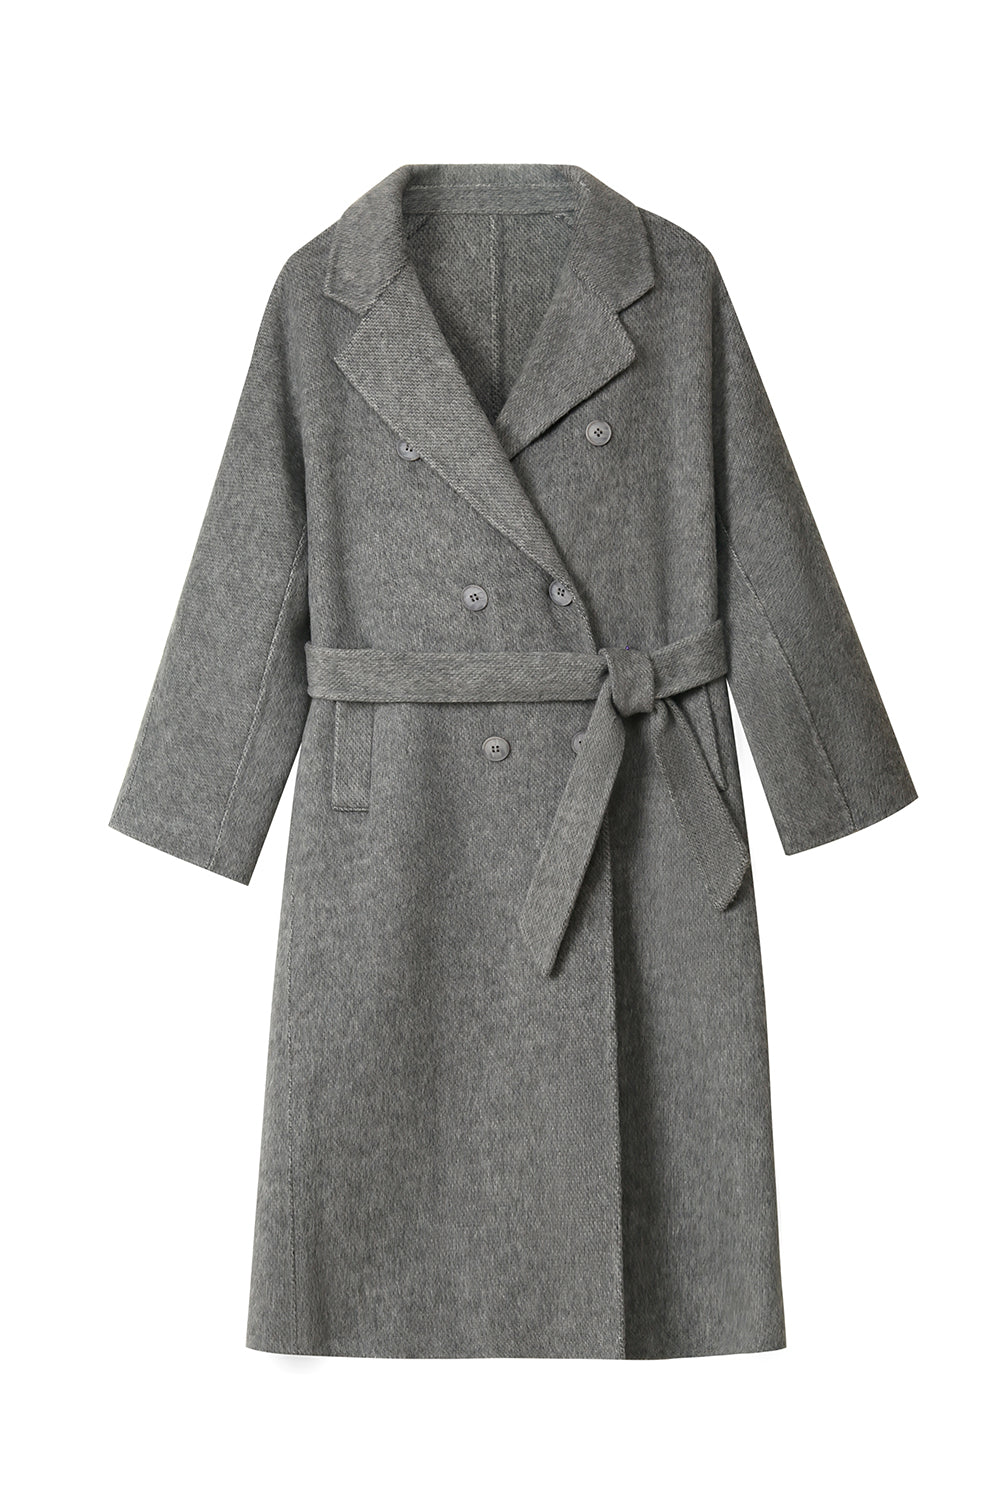 Grauer zweireihiger langer Mantel aus Wollmischung mit Gürtel